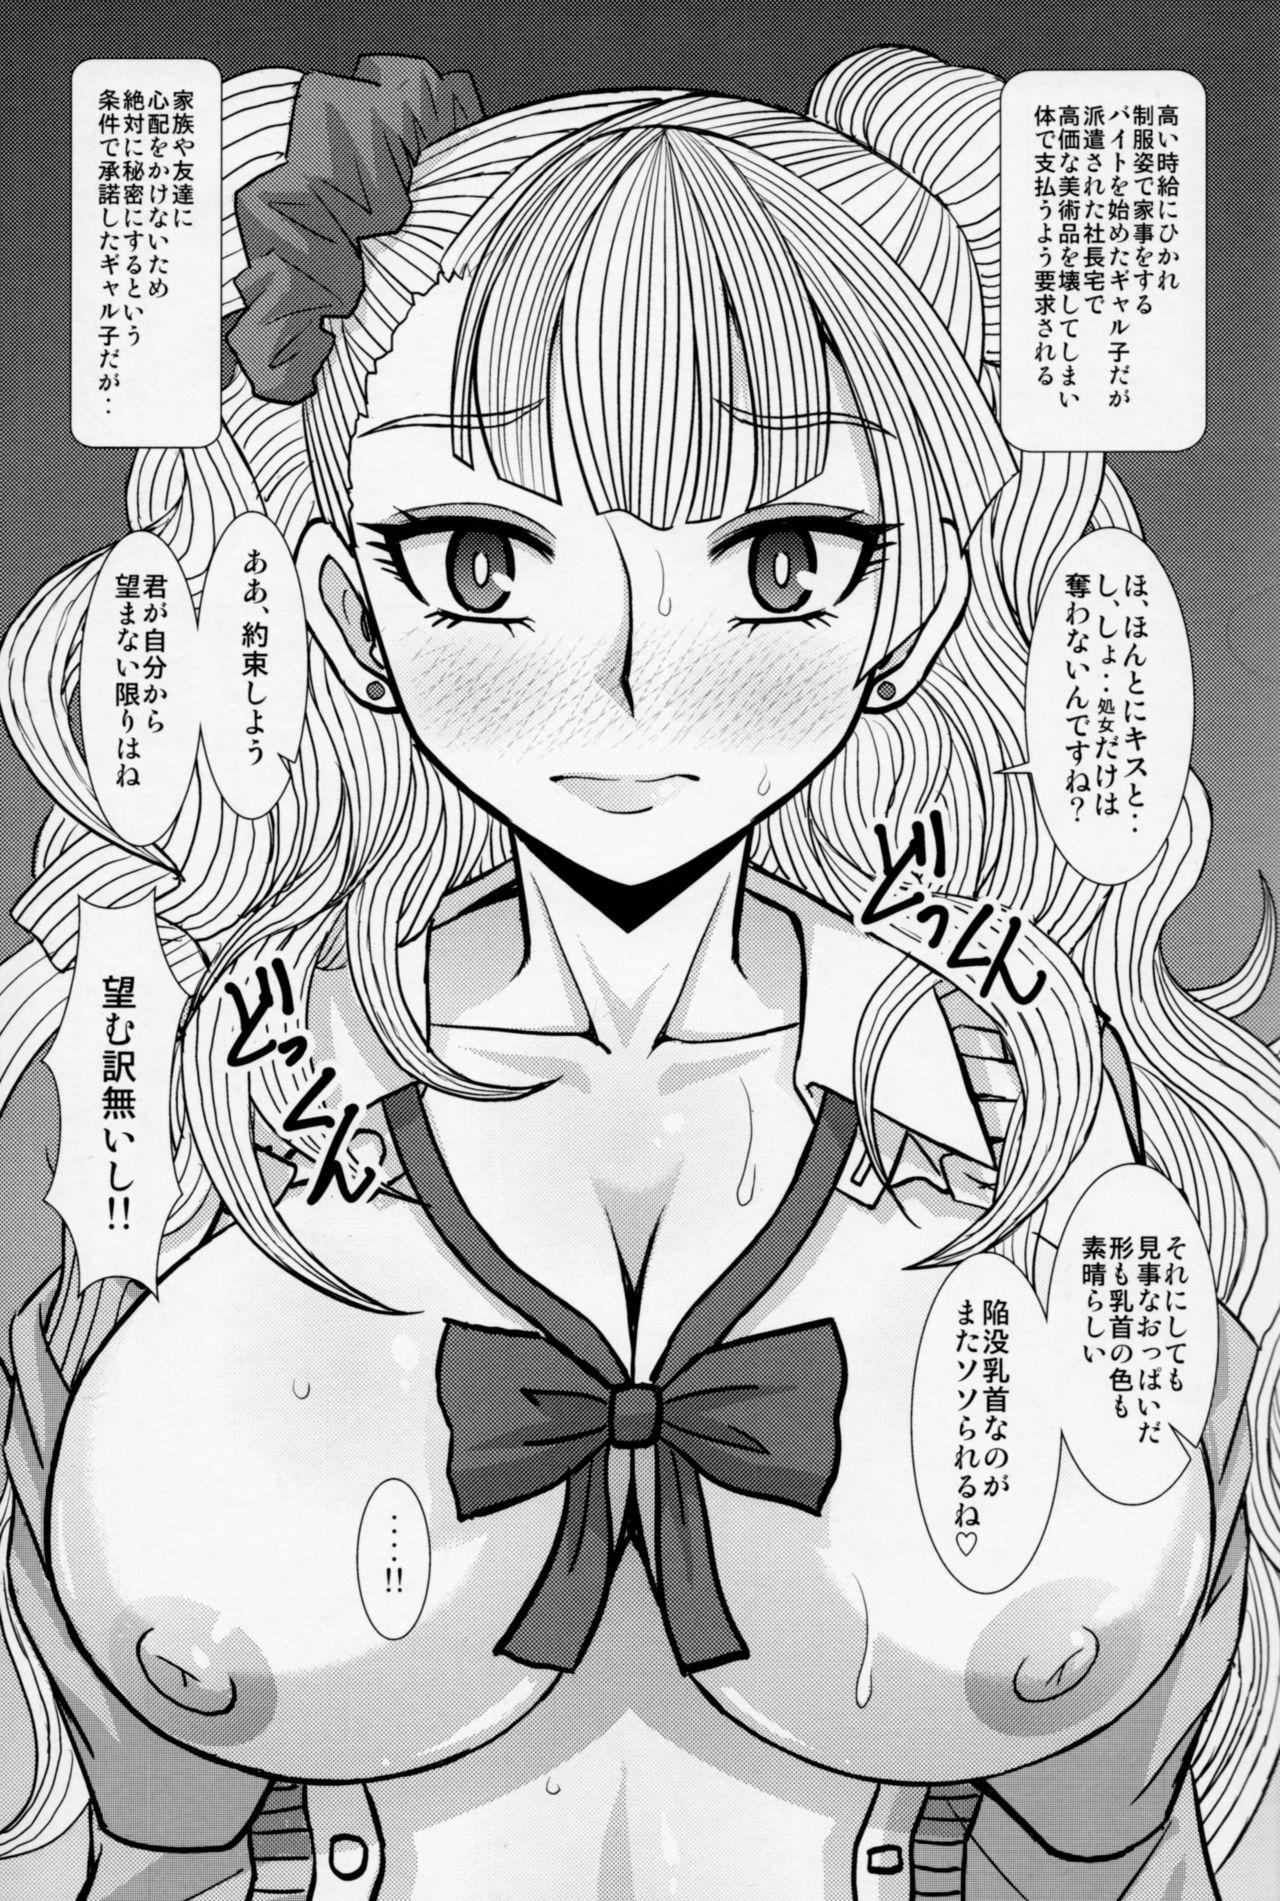 Bucetuda Ikenai! Galko-chan - Oshiete galko chan Sucking Dick - Page 4